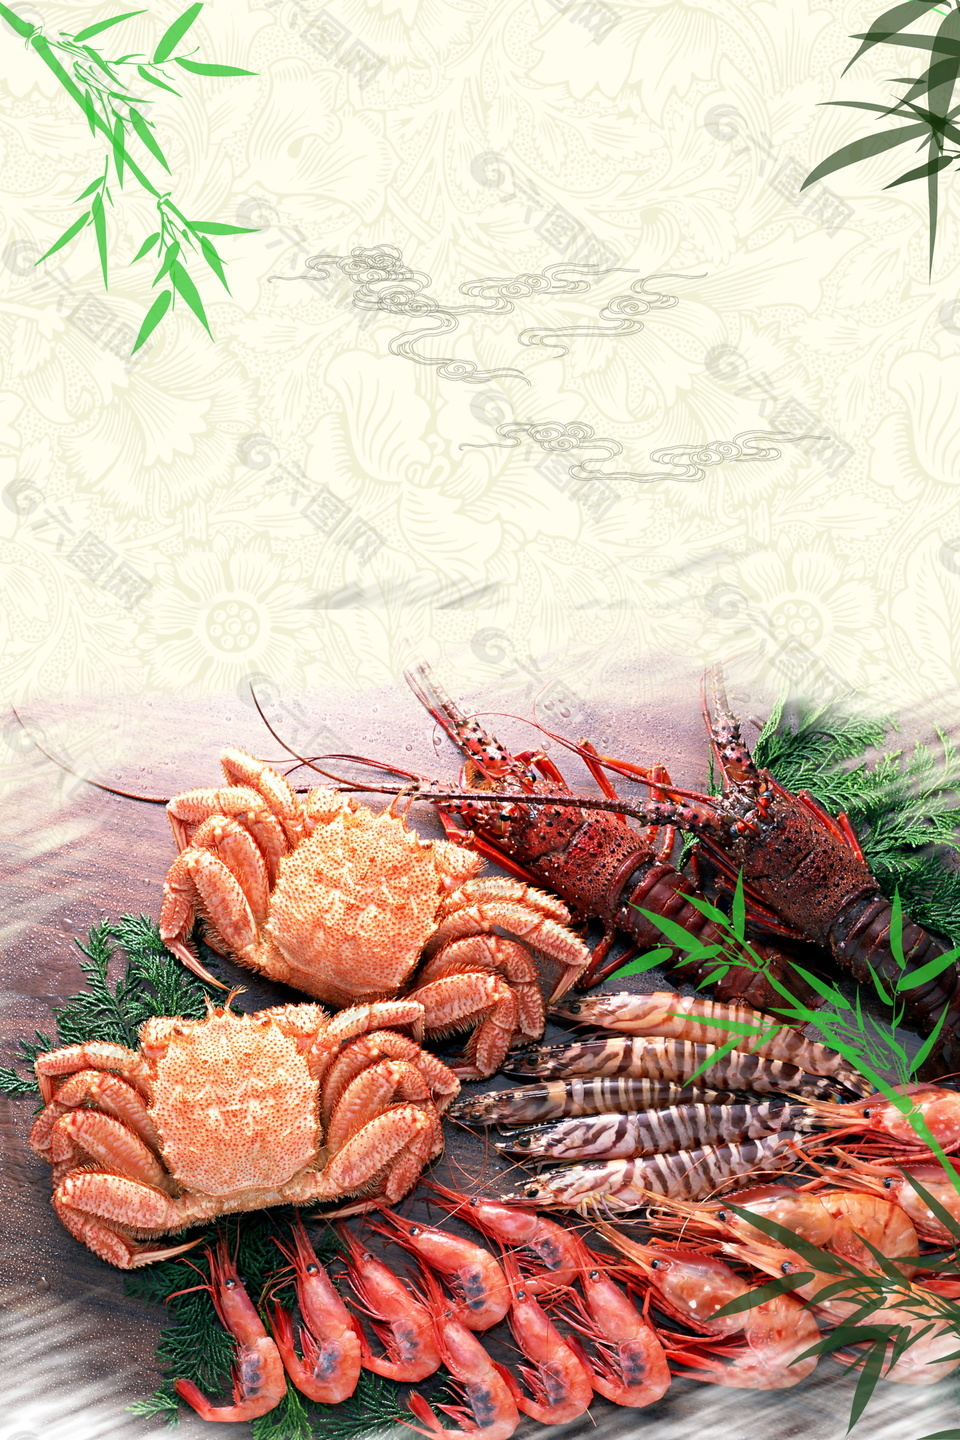 绿竹虾蟹海鲜吃货节广告背景素材